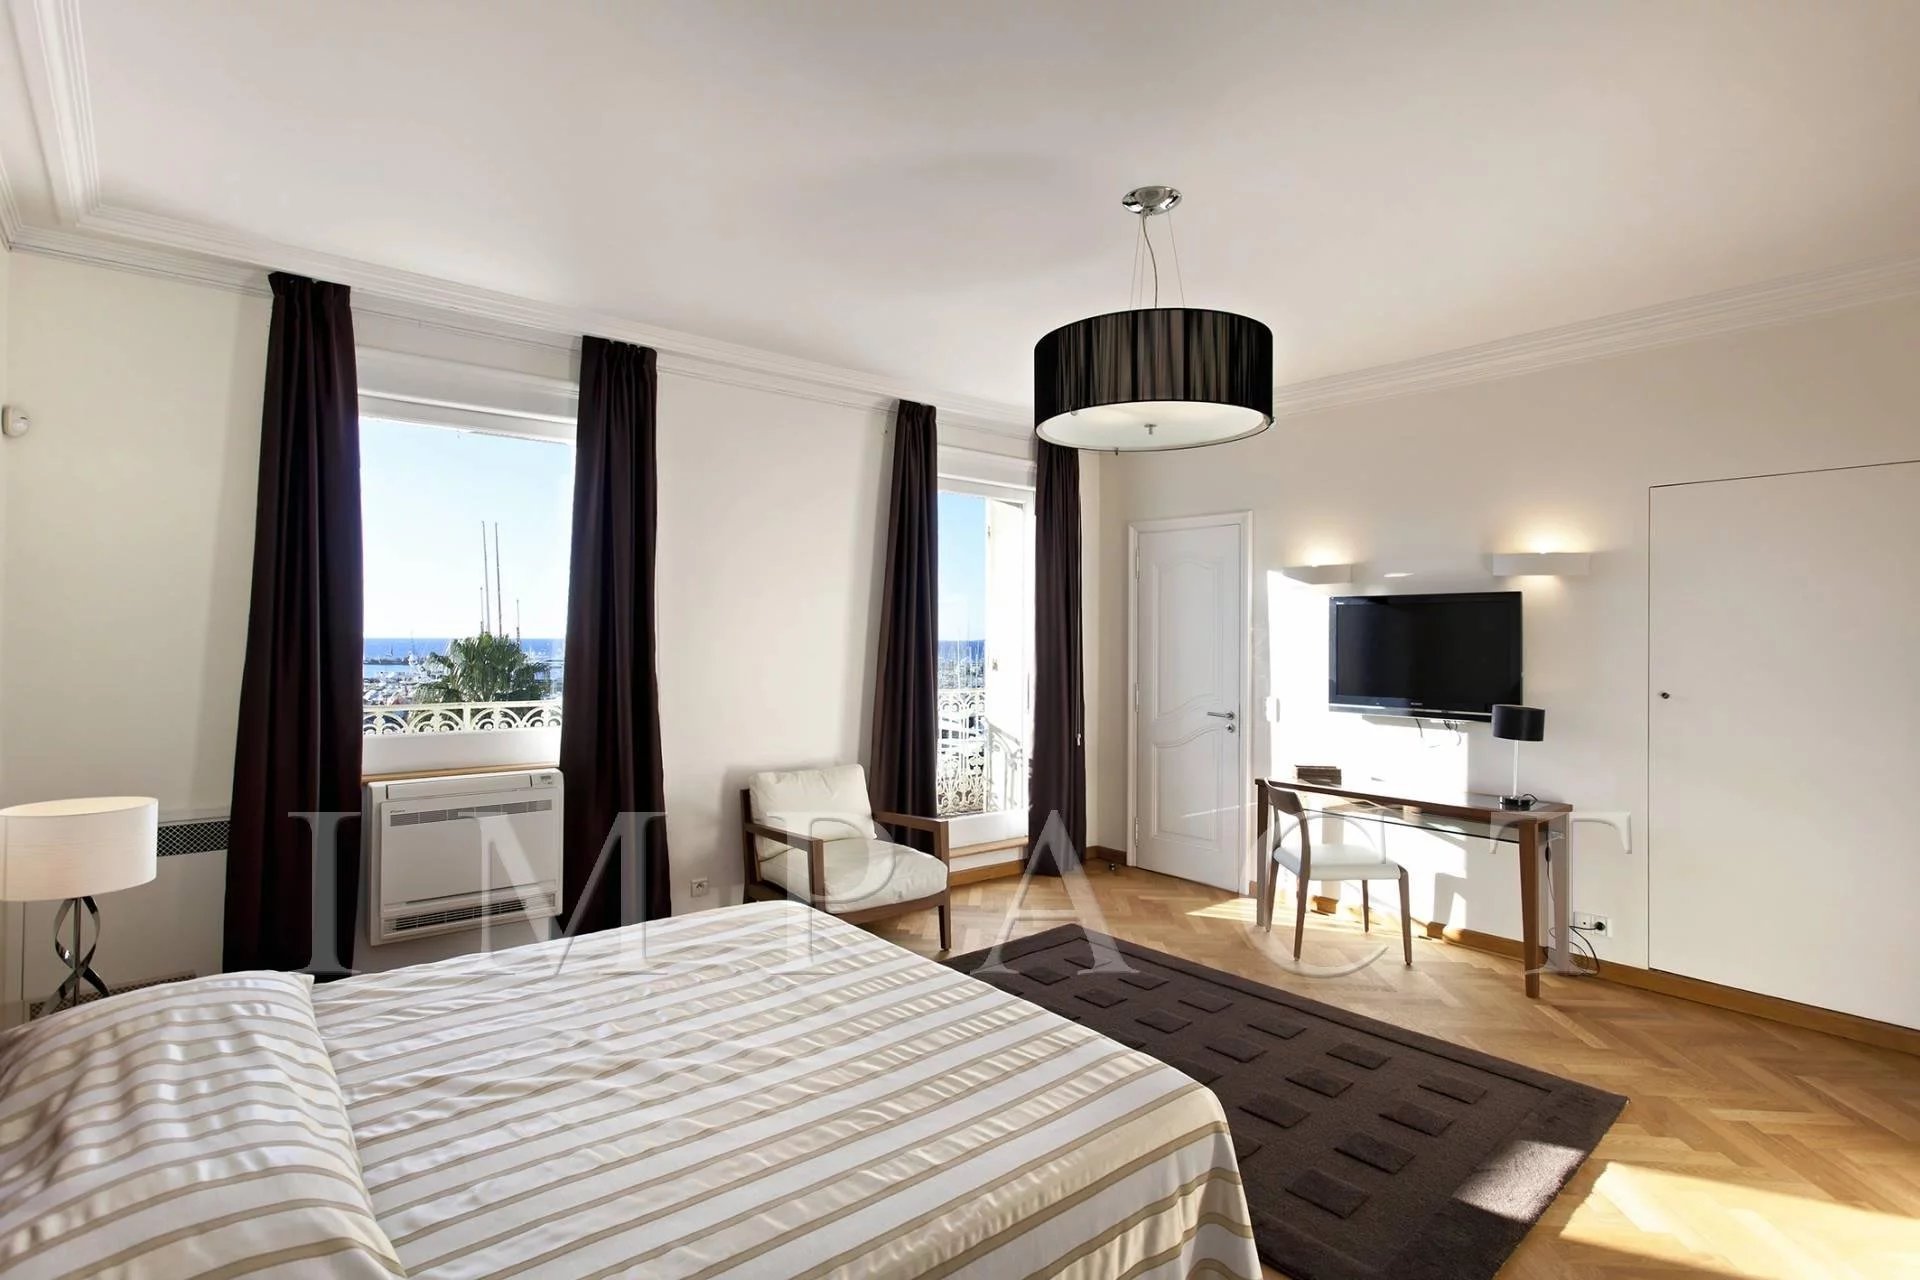 Location Appartement 3 chambres face au Palais des Festivals Cannes Centre